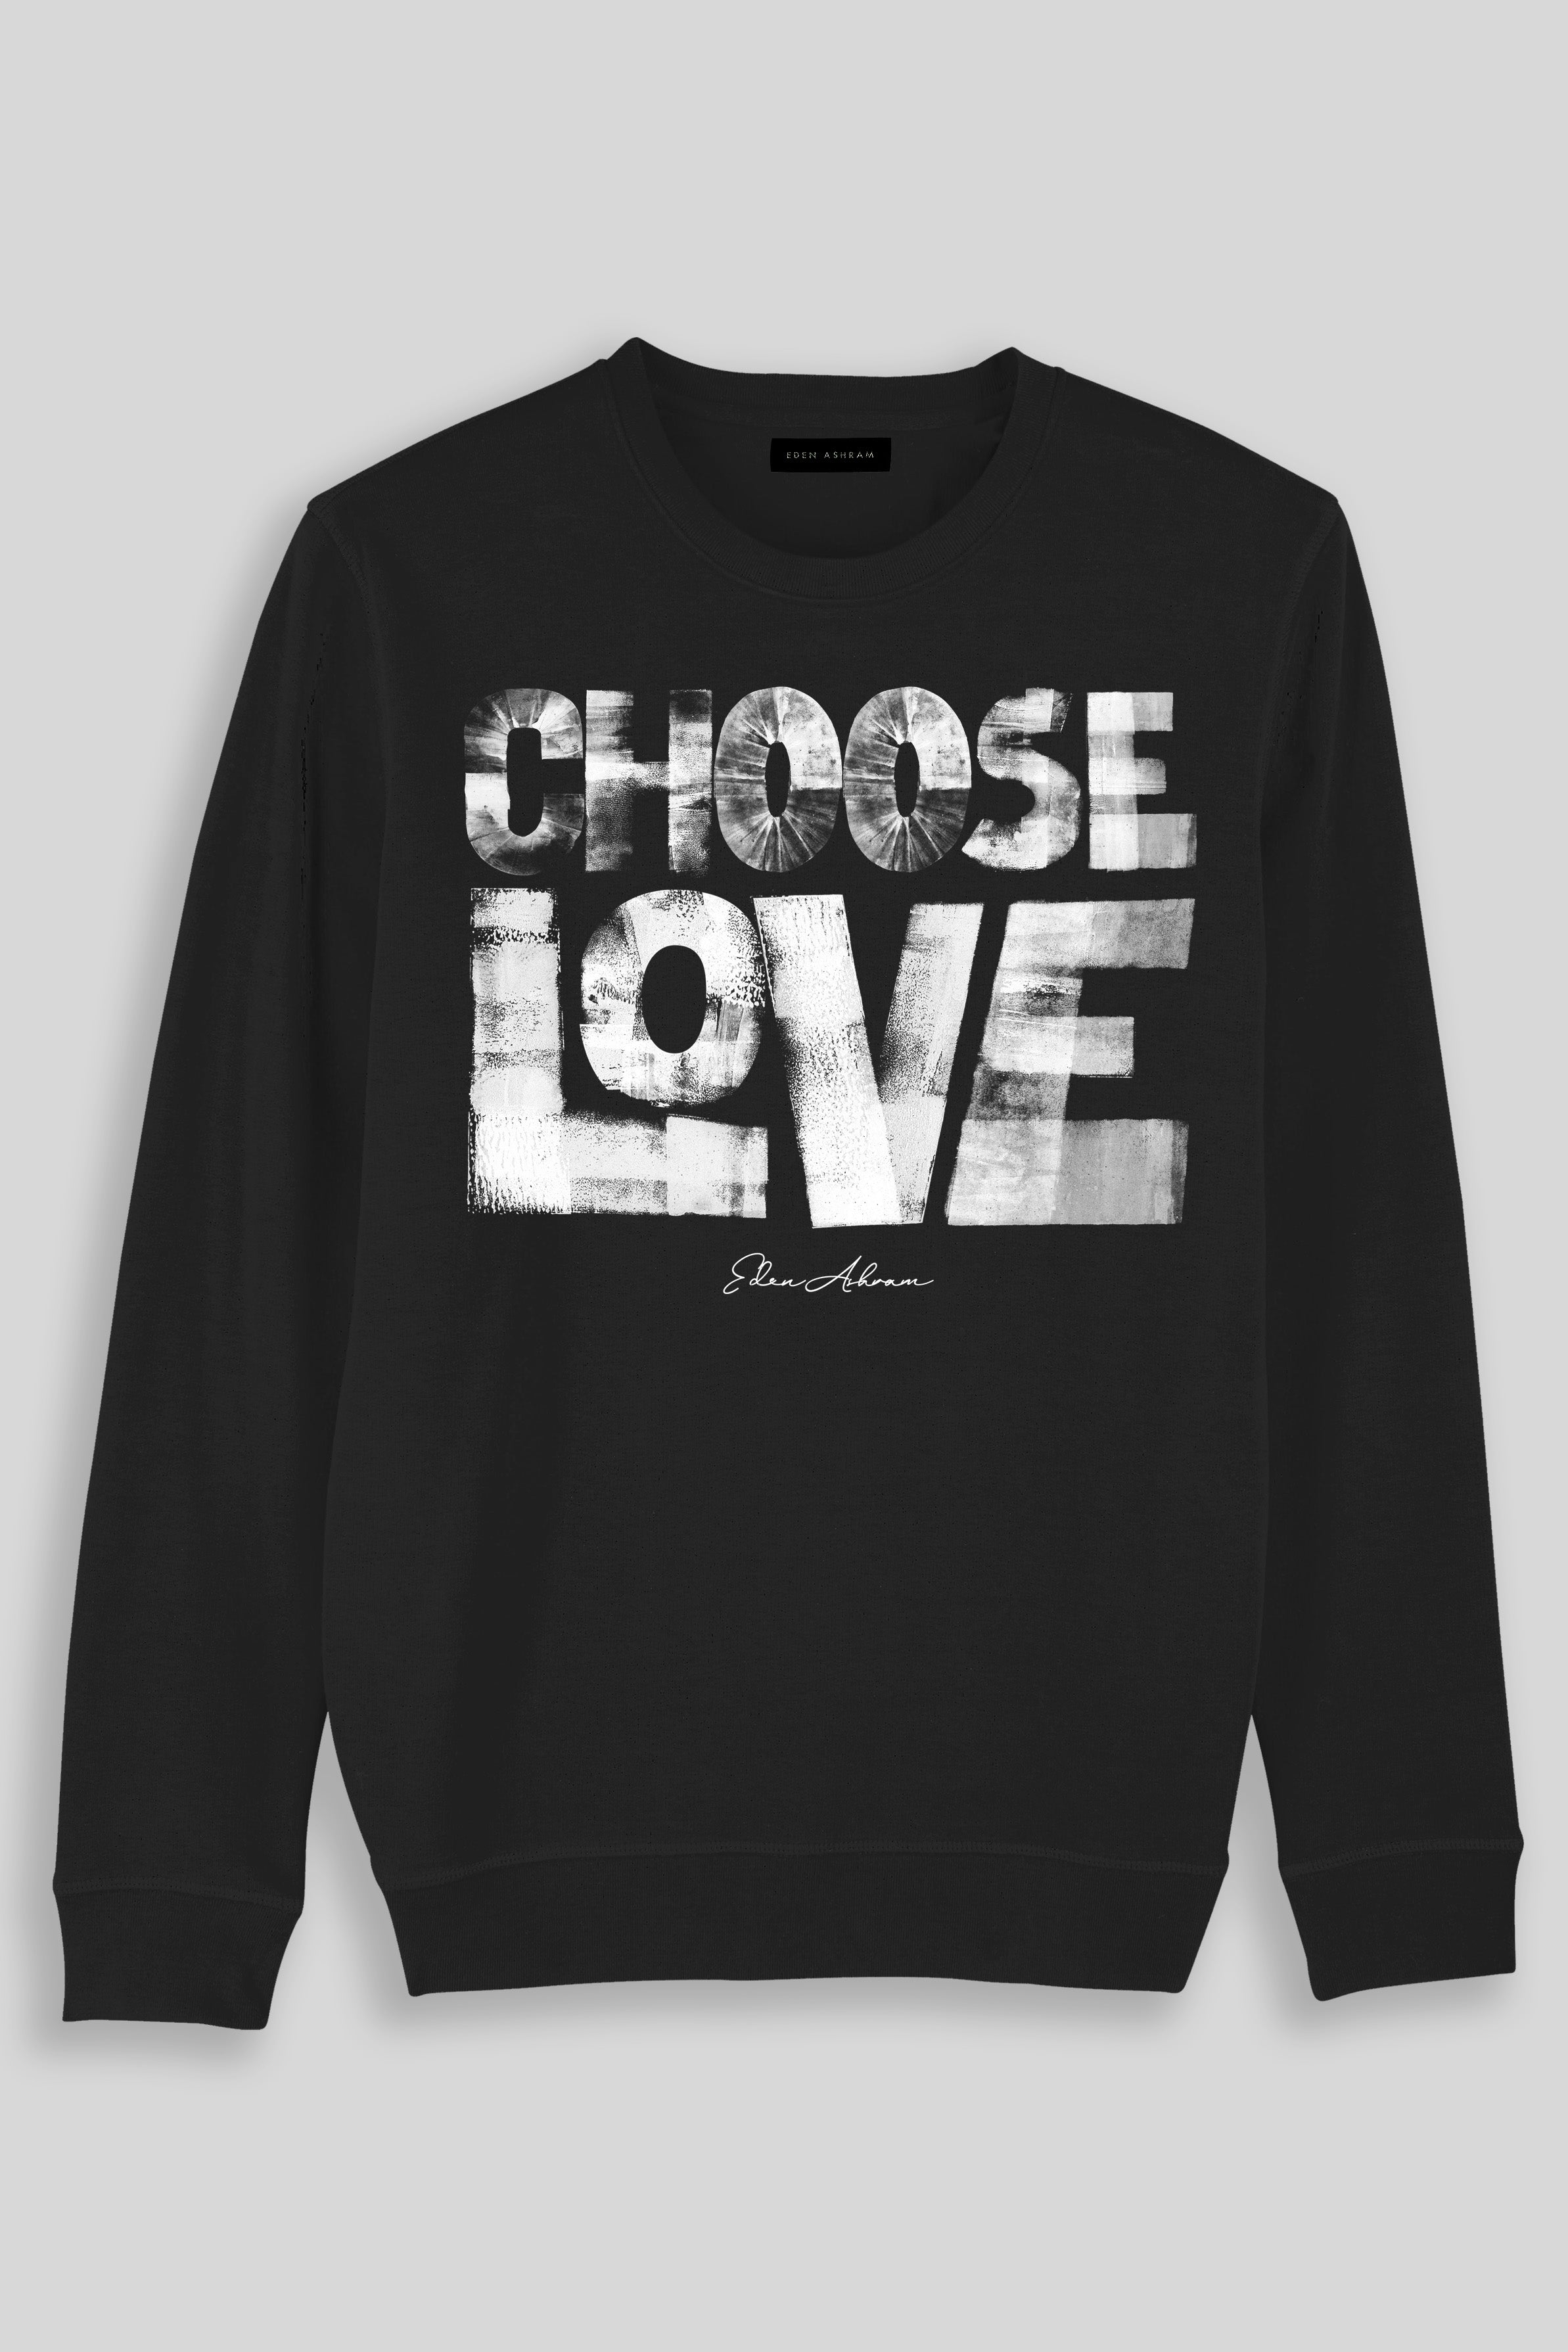 Eden Ashram Choose Love Premium Crew Neck Sweatshirt Black